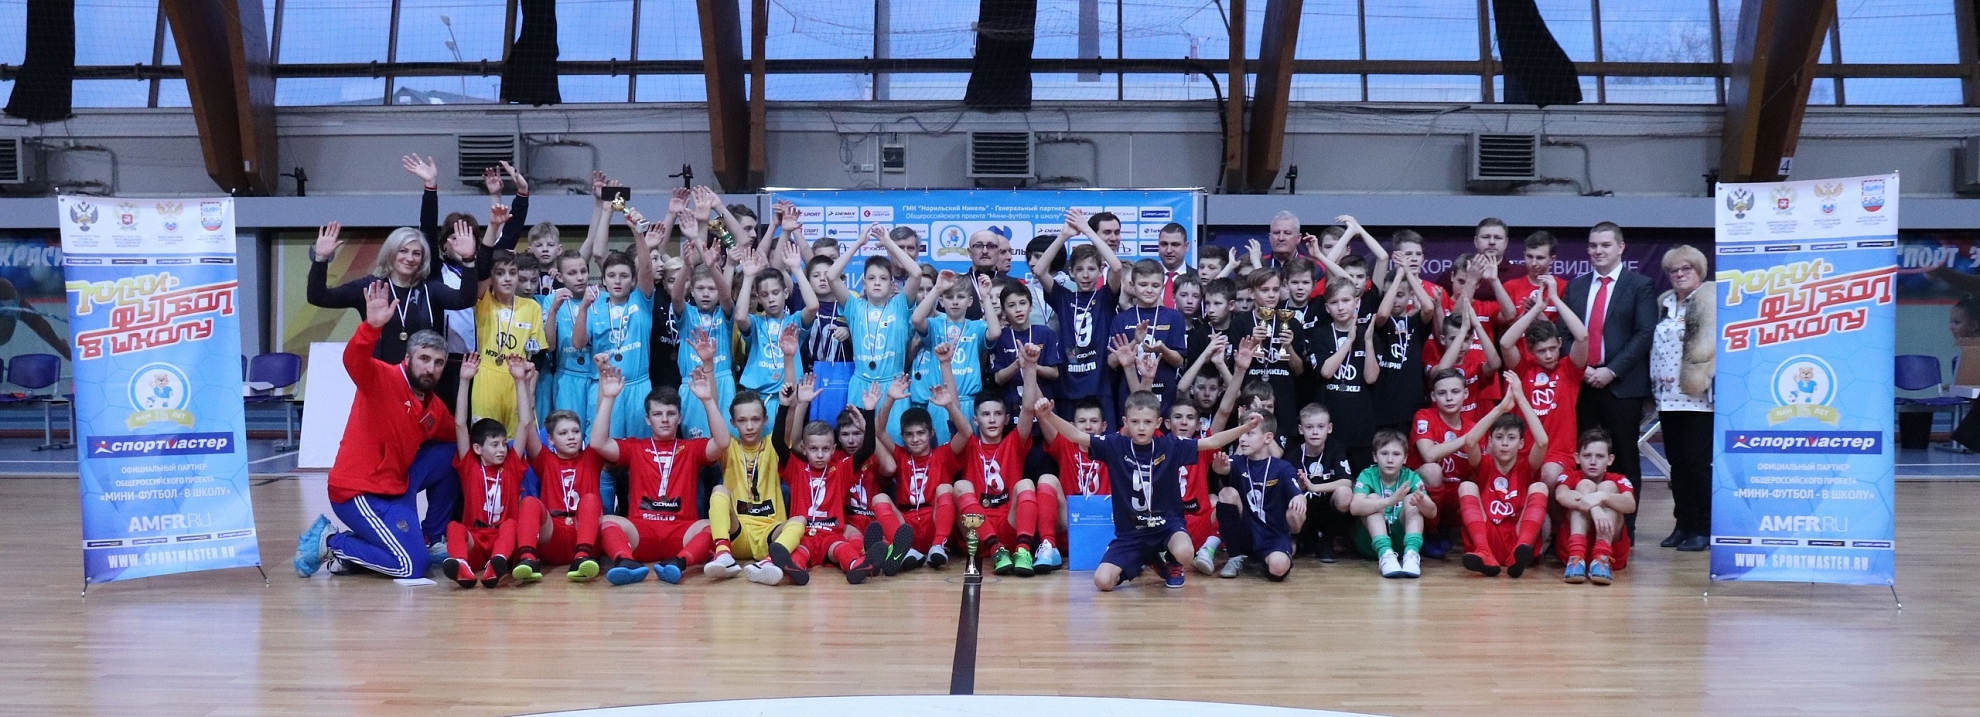 Команды из регионов СФФ "Центр" призеры проекта "Мини-футбол — в школу" в ЦФО!